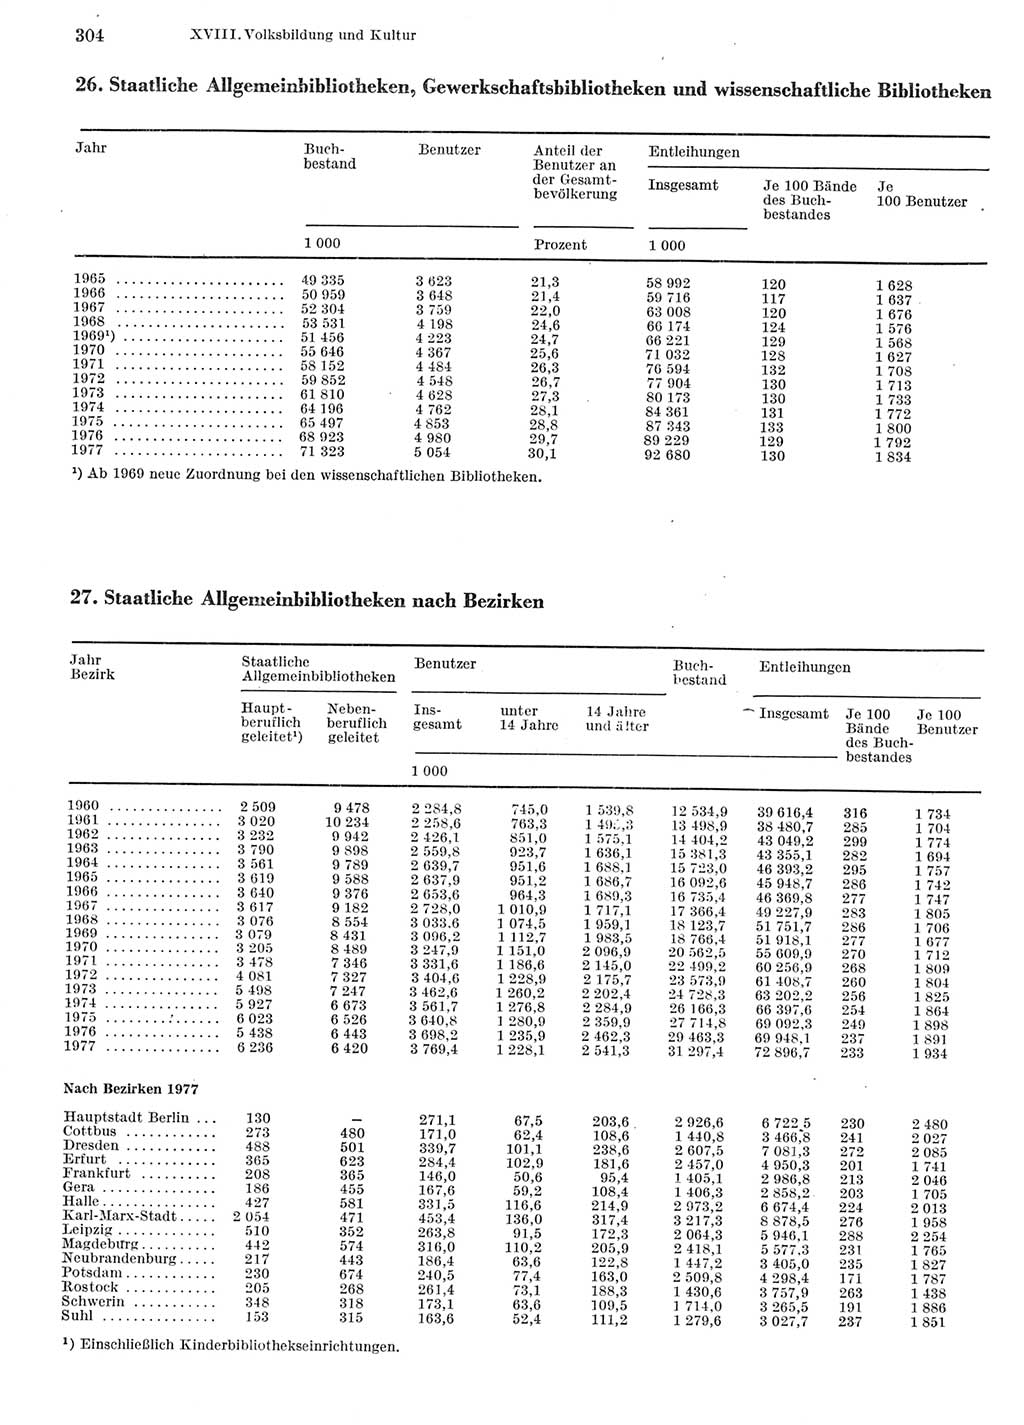 Statistisches Jahrbuch der Deutschen Demokratischen Republik (DDR) 1978, Seite 304 (Stat. Jb. DDR 1978, S. 304)